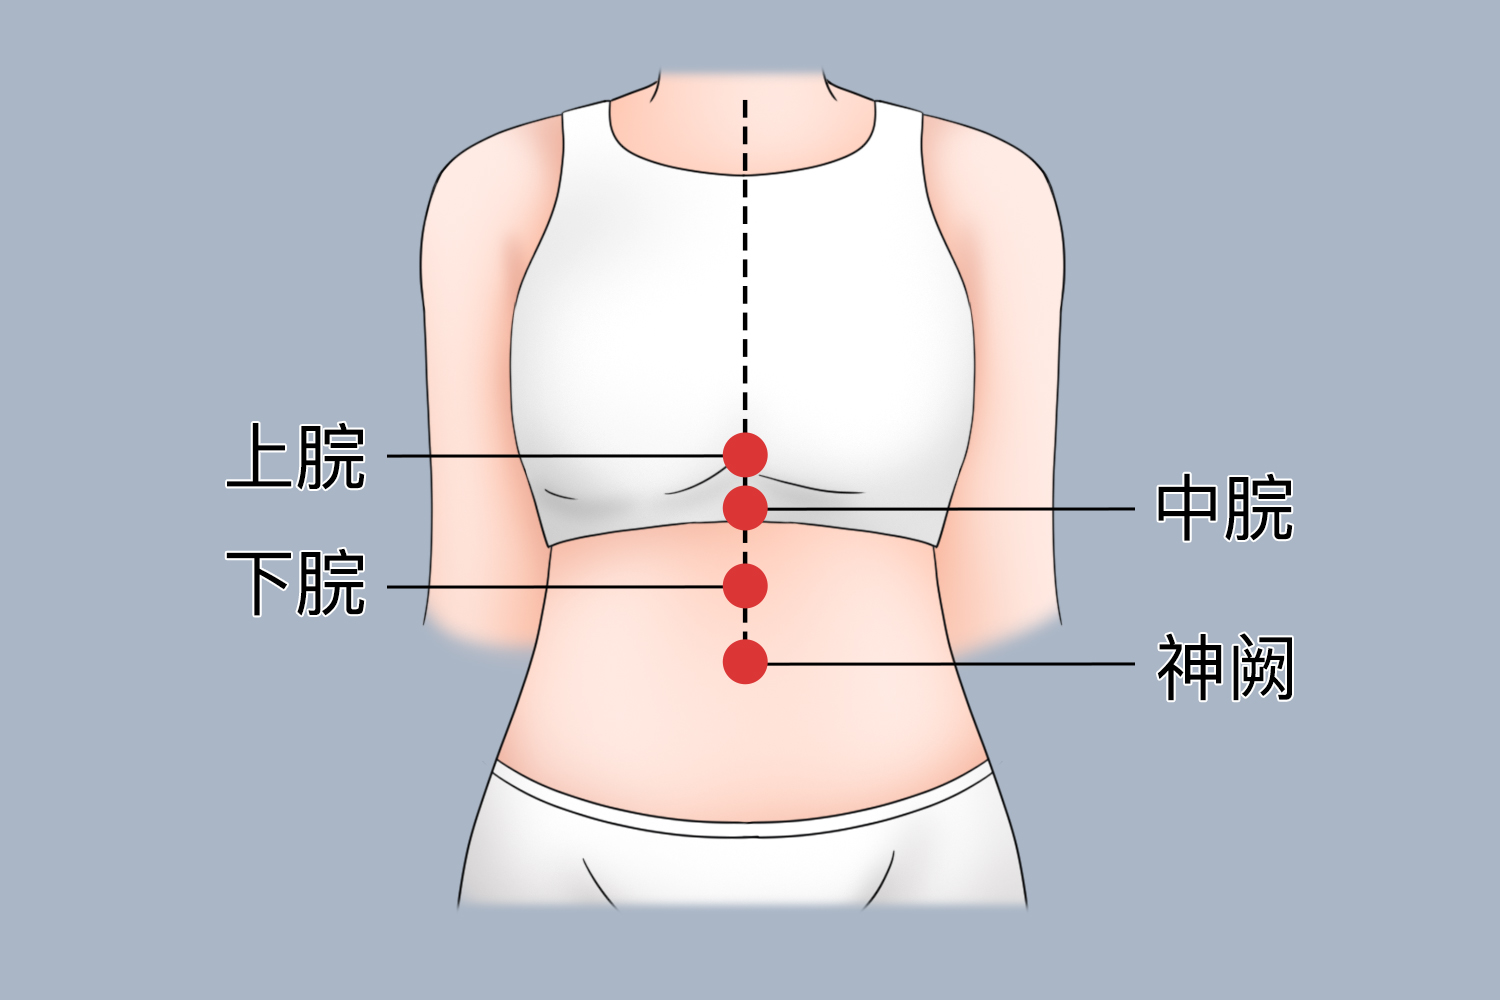 胃痛位置图图片